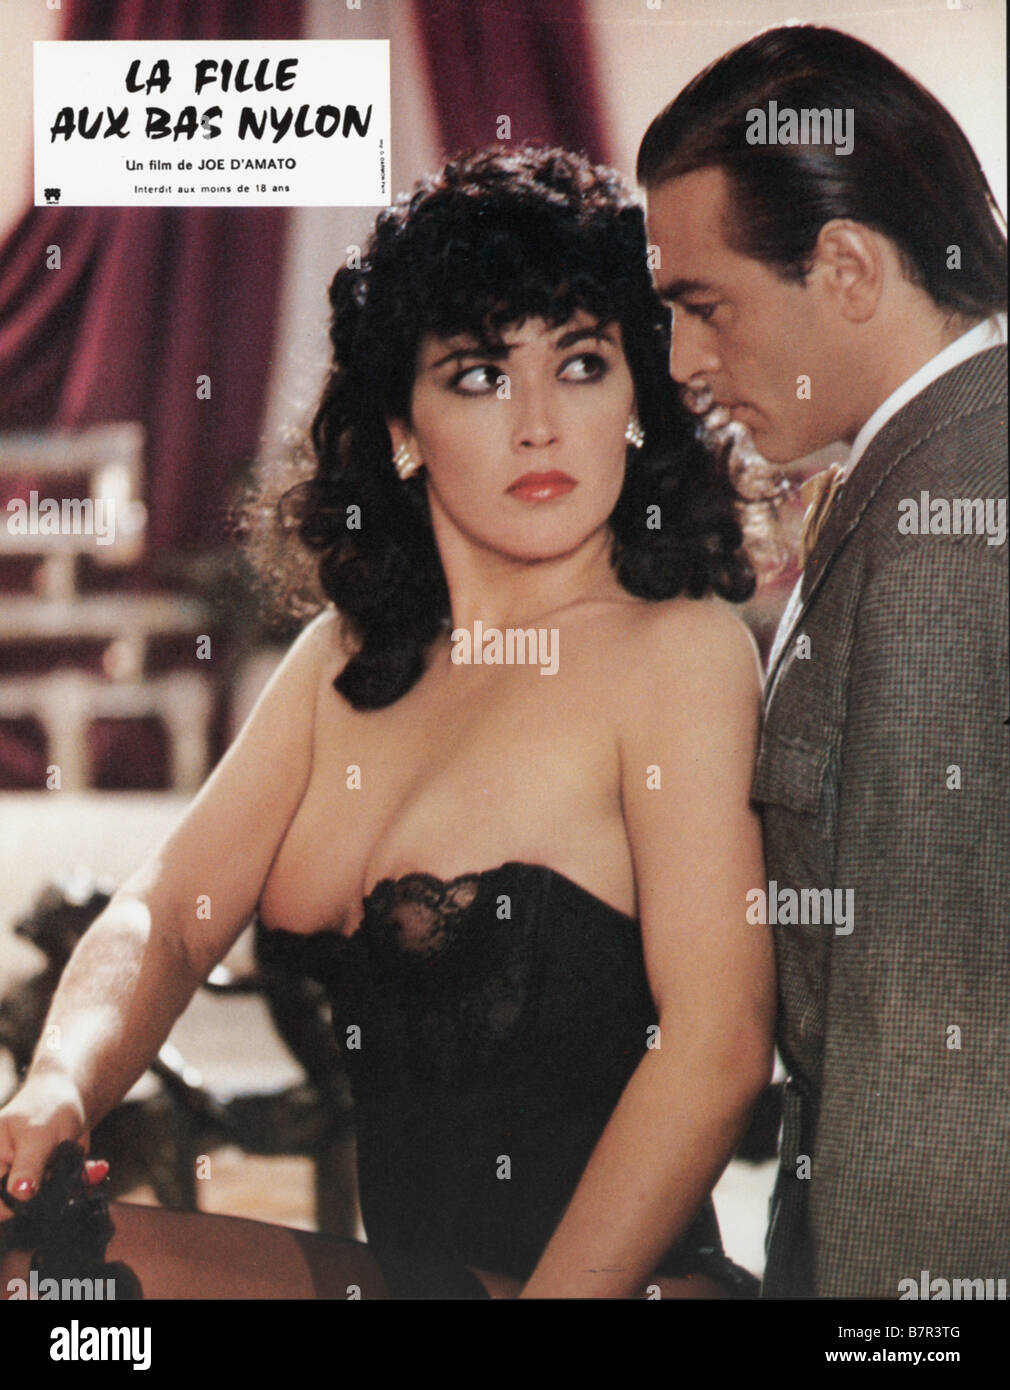 La fille aux bas nylon Voglia di guardare Year: 1986 - italy Director: Joe  D'Amato Stock Photo - Alamy